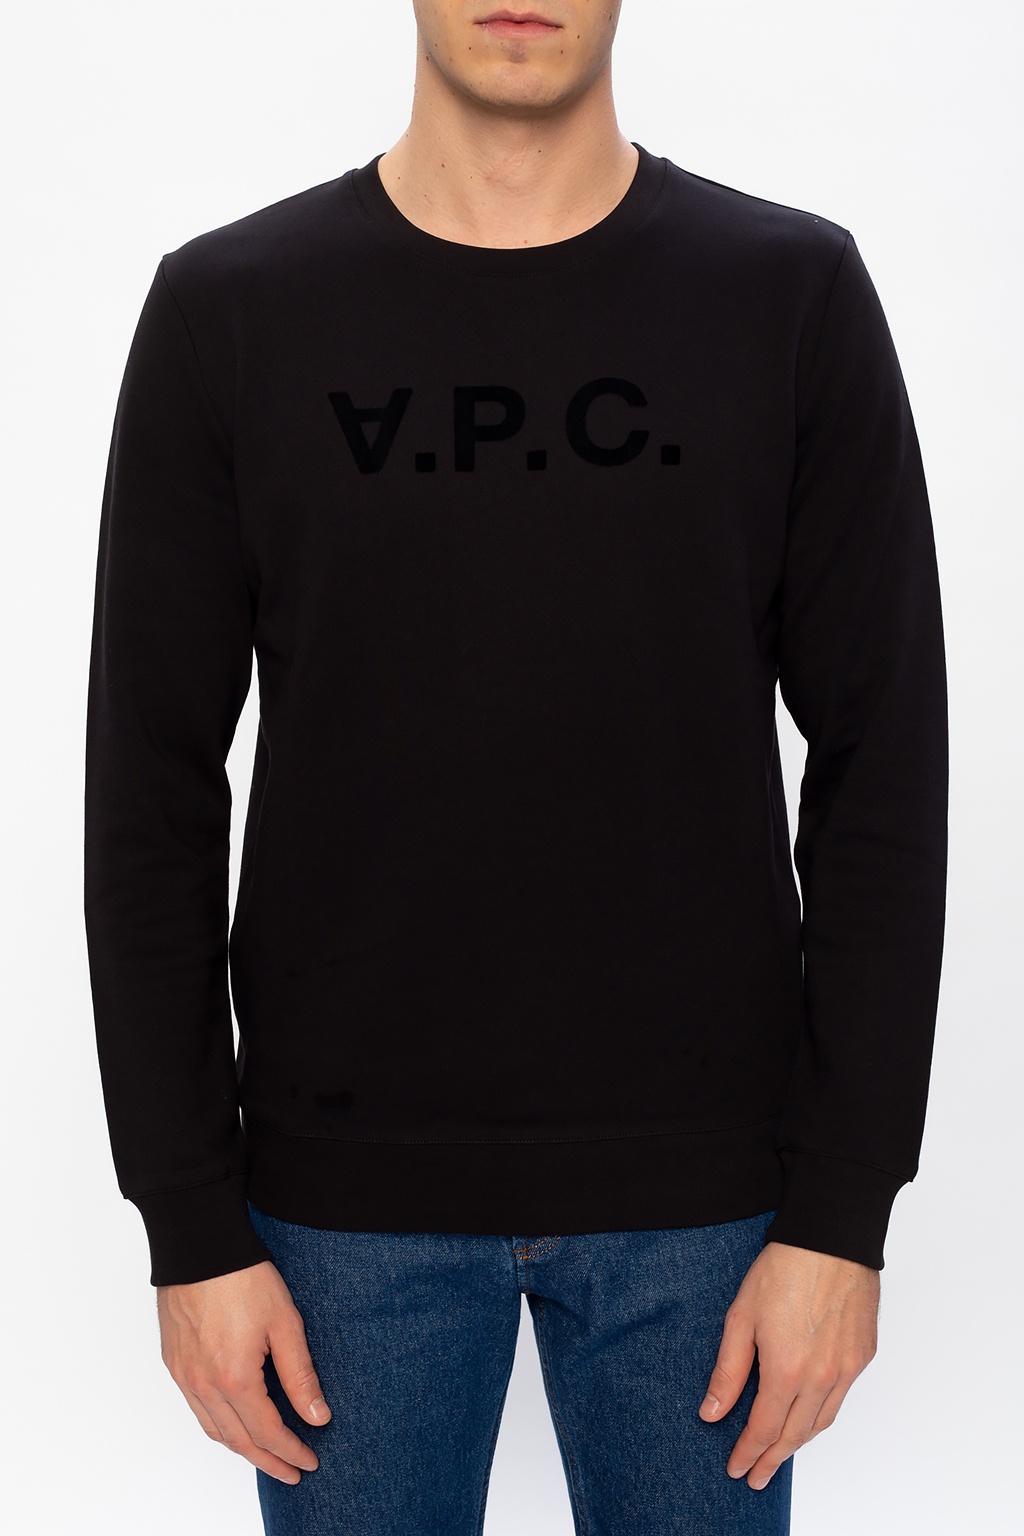 A.P.C. Sweatshirt with velvet logo